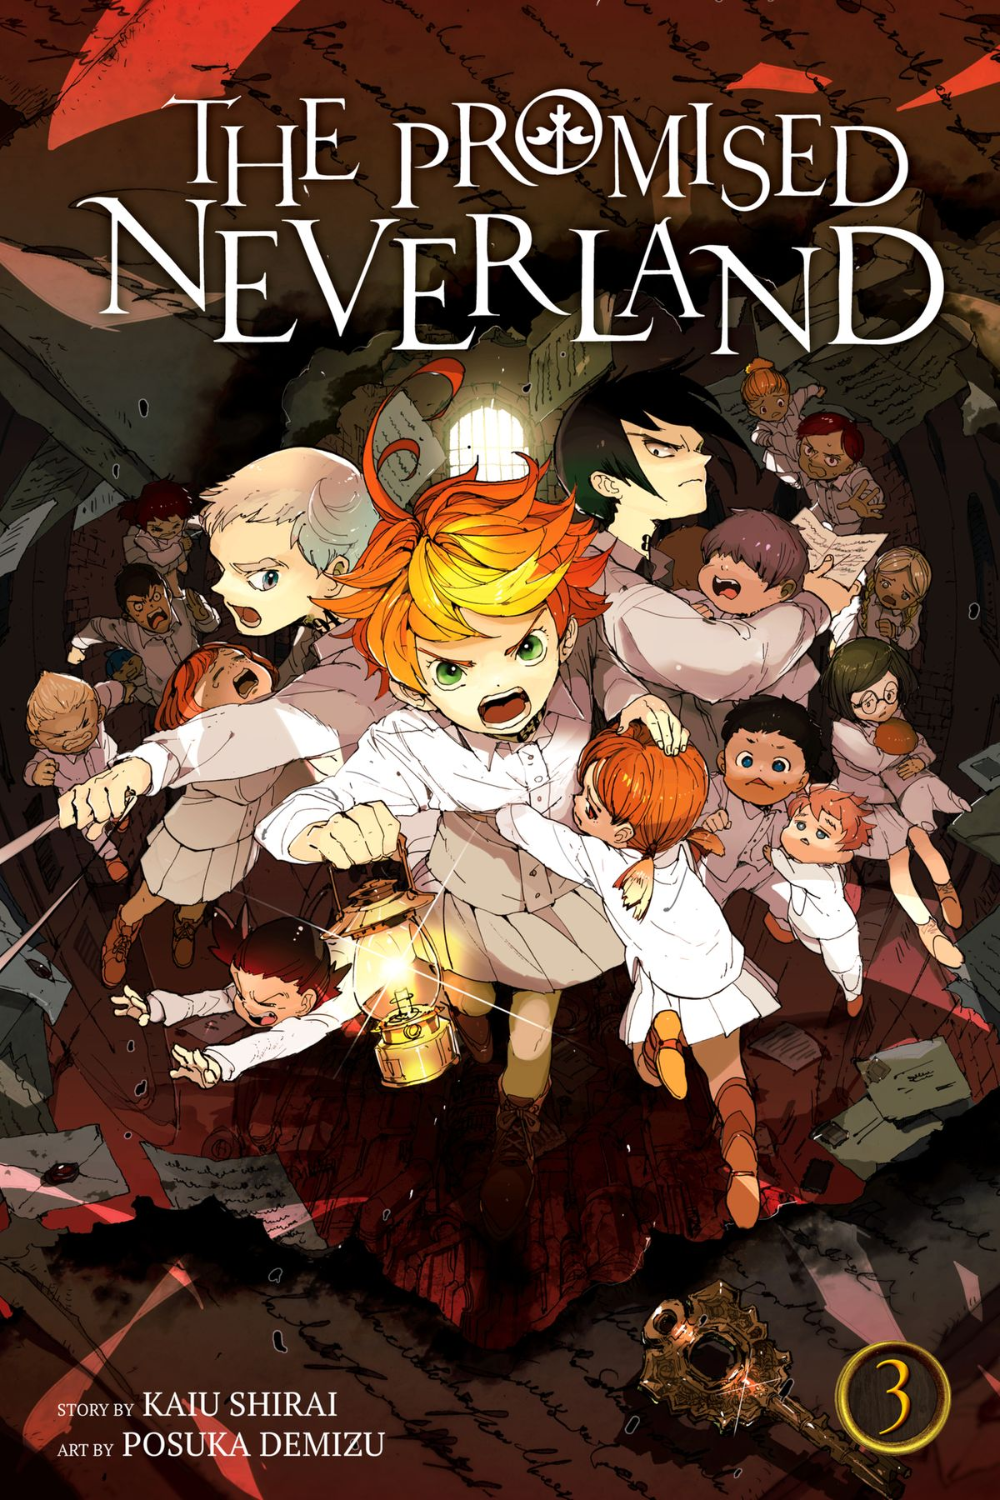 The Promised Neverland, Vol. 3 ebook by Kaiu Shirai - Rakuten Kobo